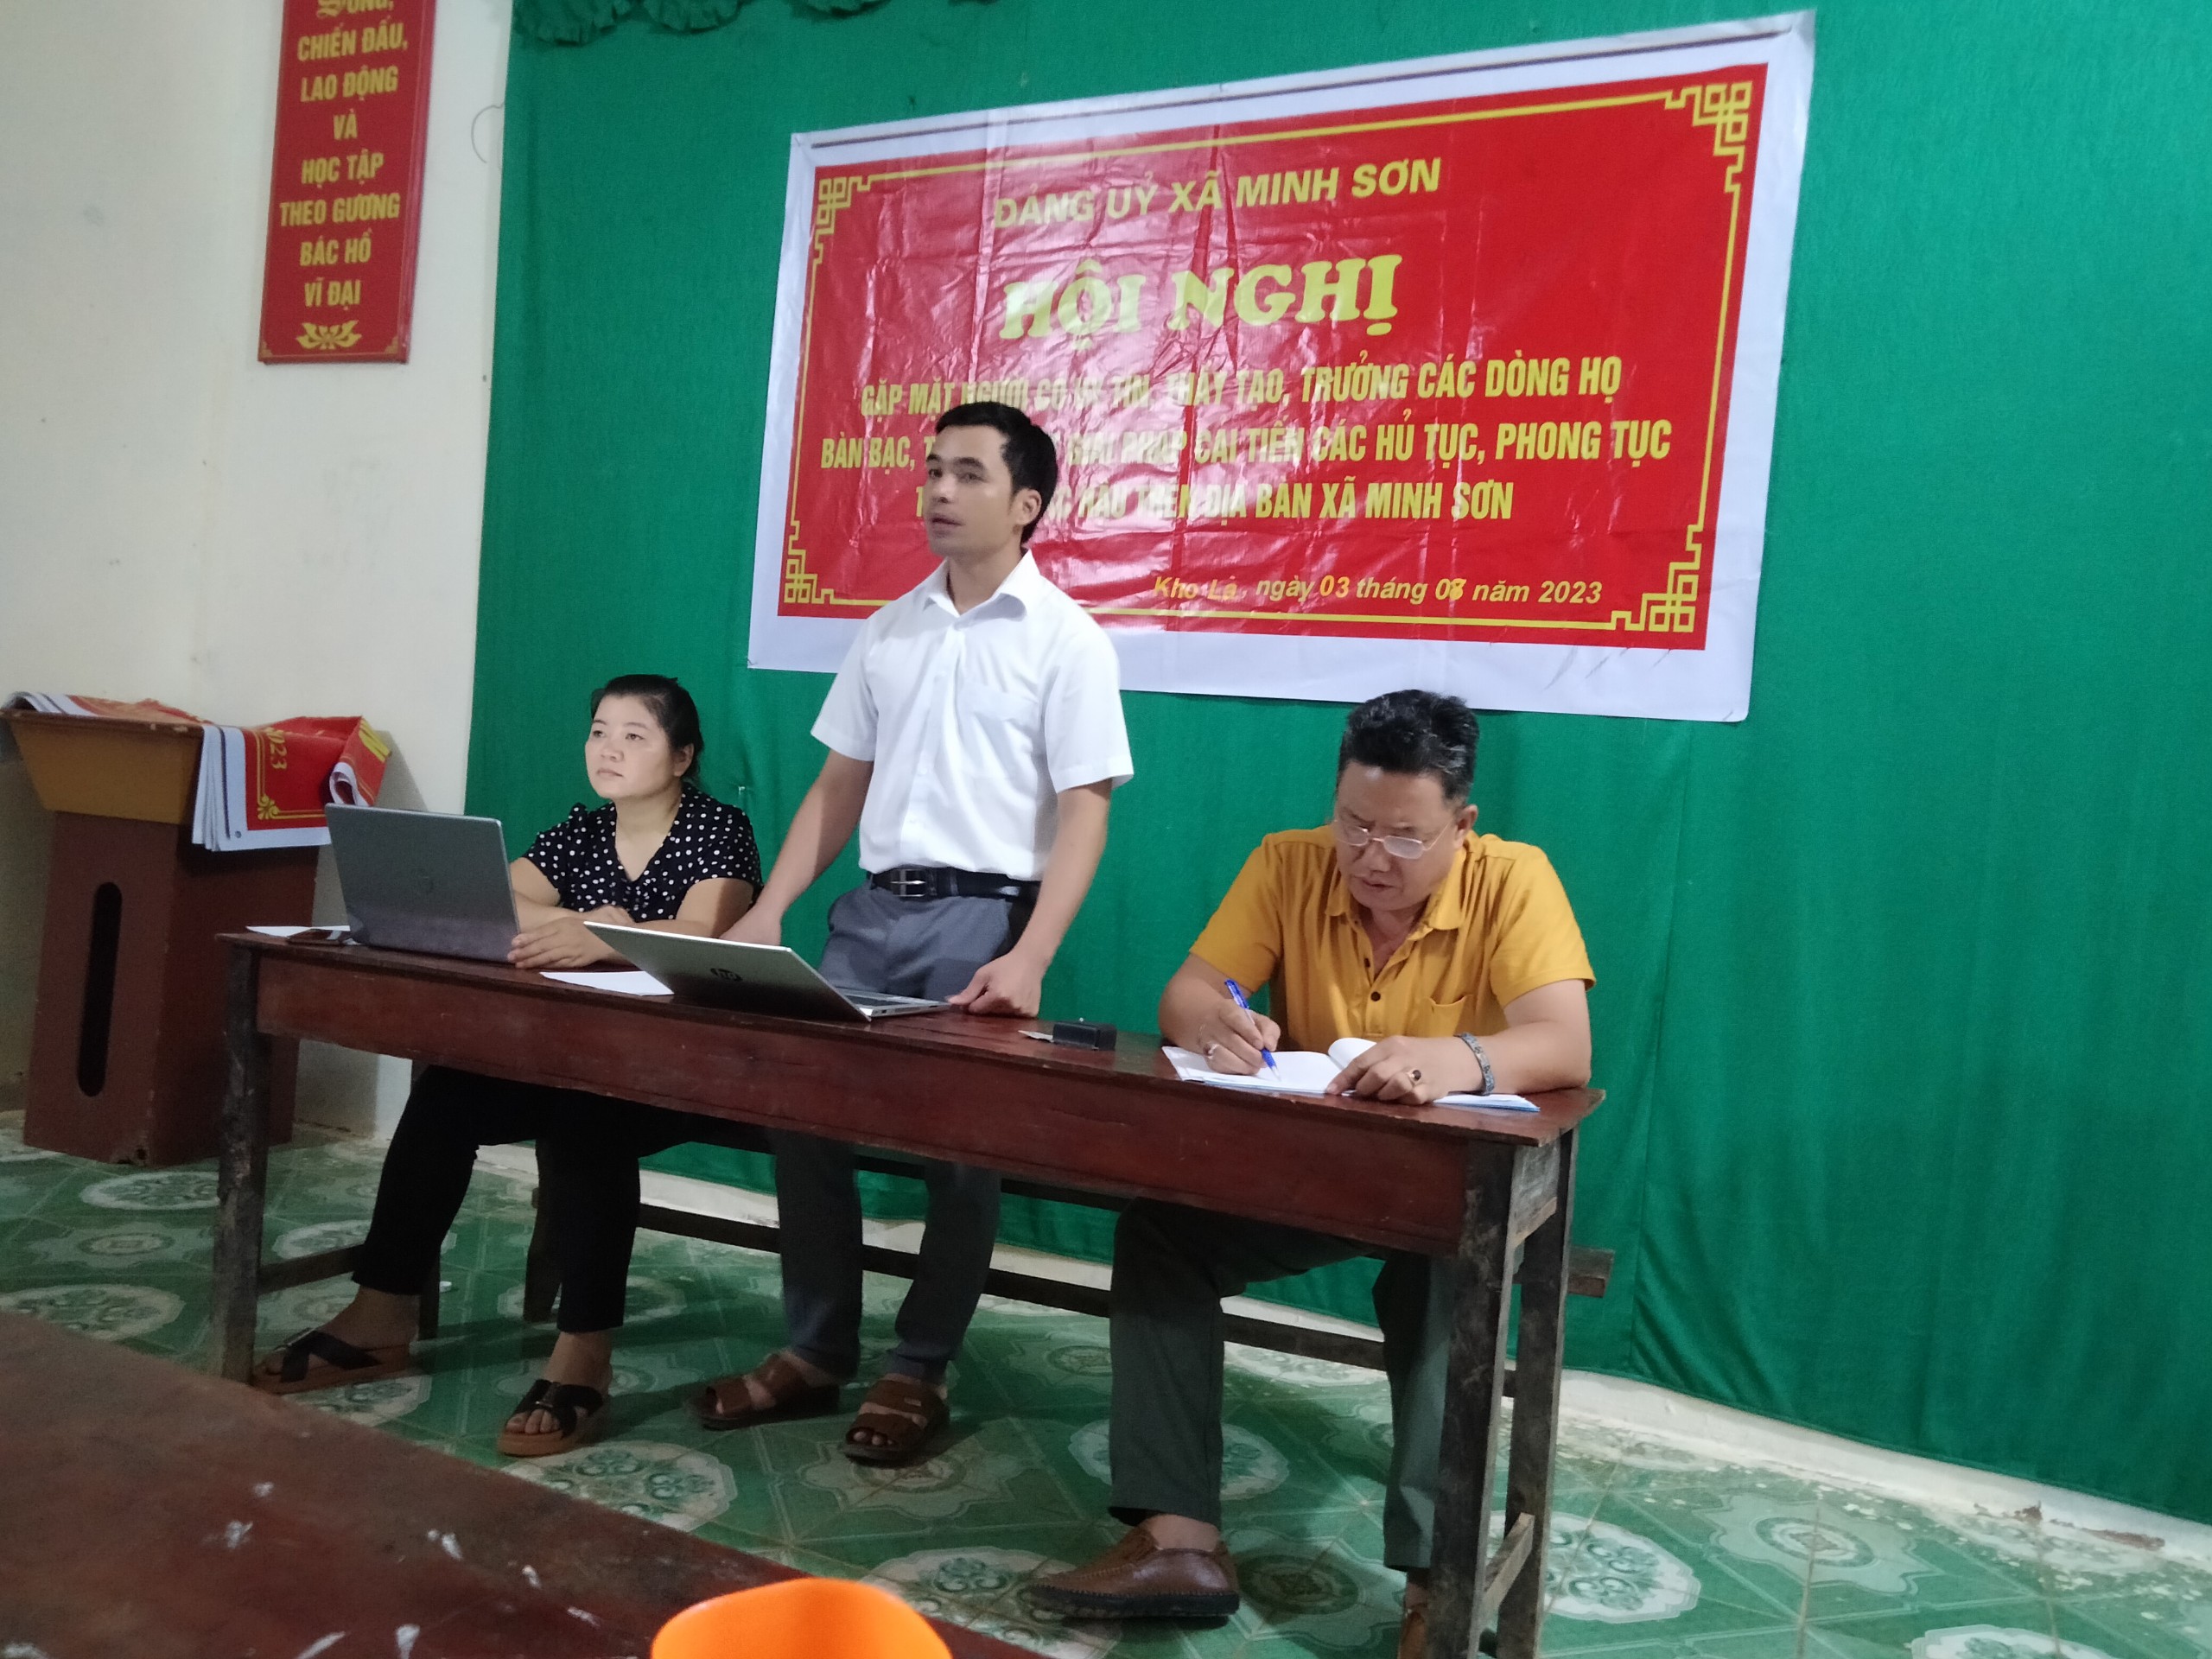 Xã Minh Sơn tổ chức hội nghị gặp mặt người có uy tín